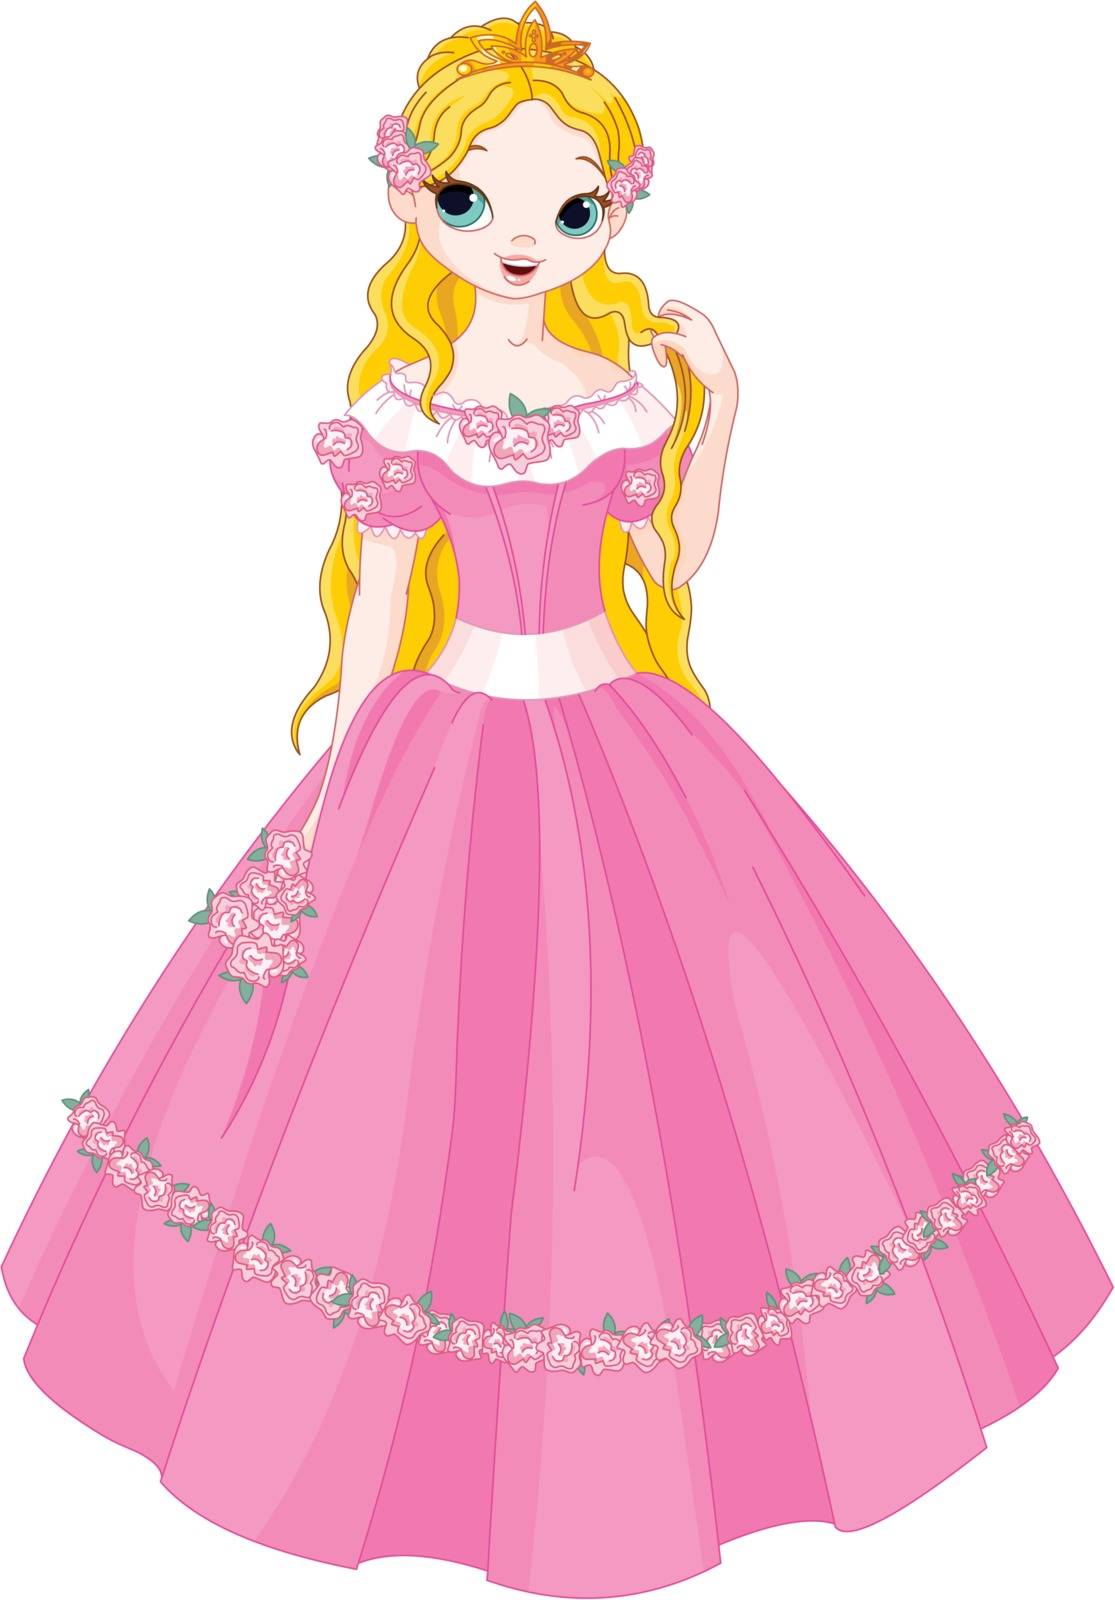 Illustration of fairytale princess